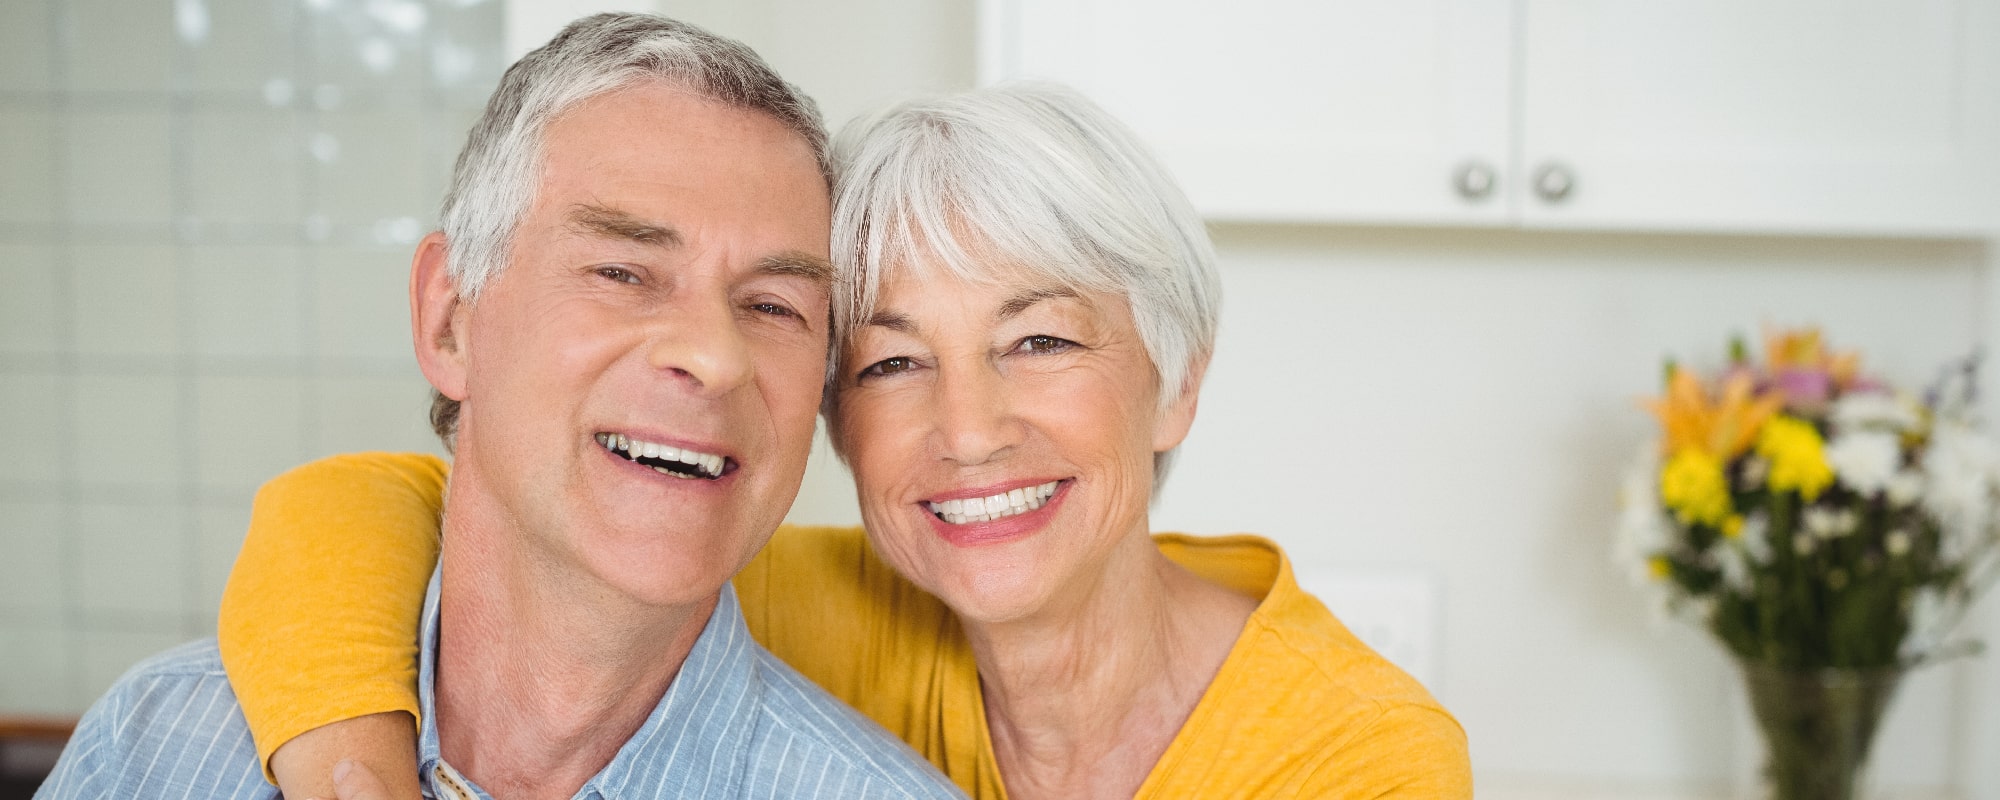 Dostępne kredyty dla emerytów – sprawdź, ile możesz pożyczyć!